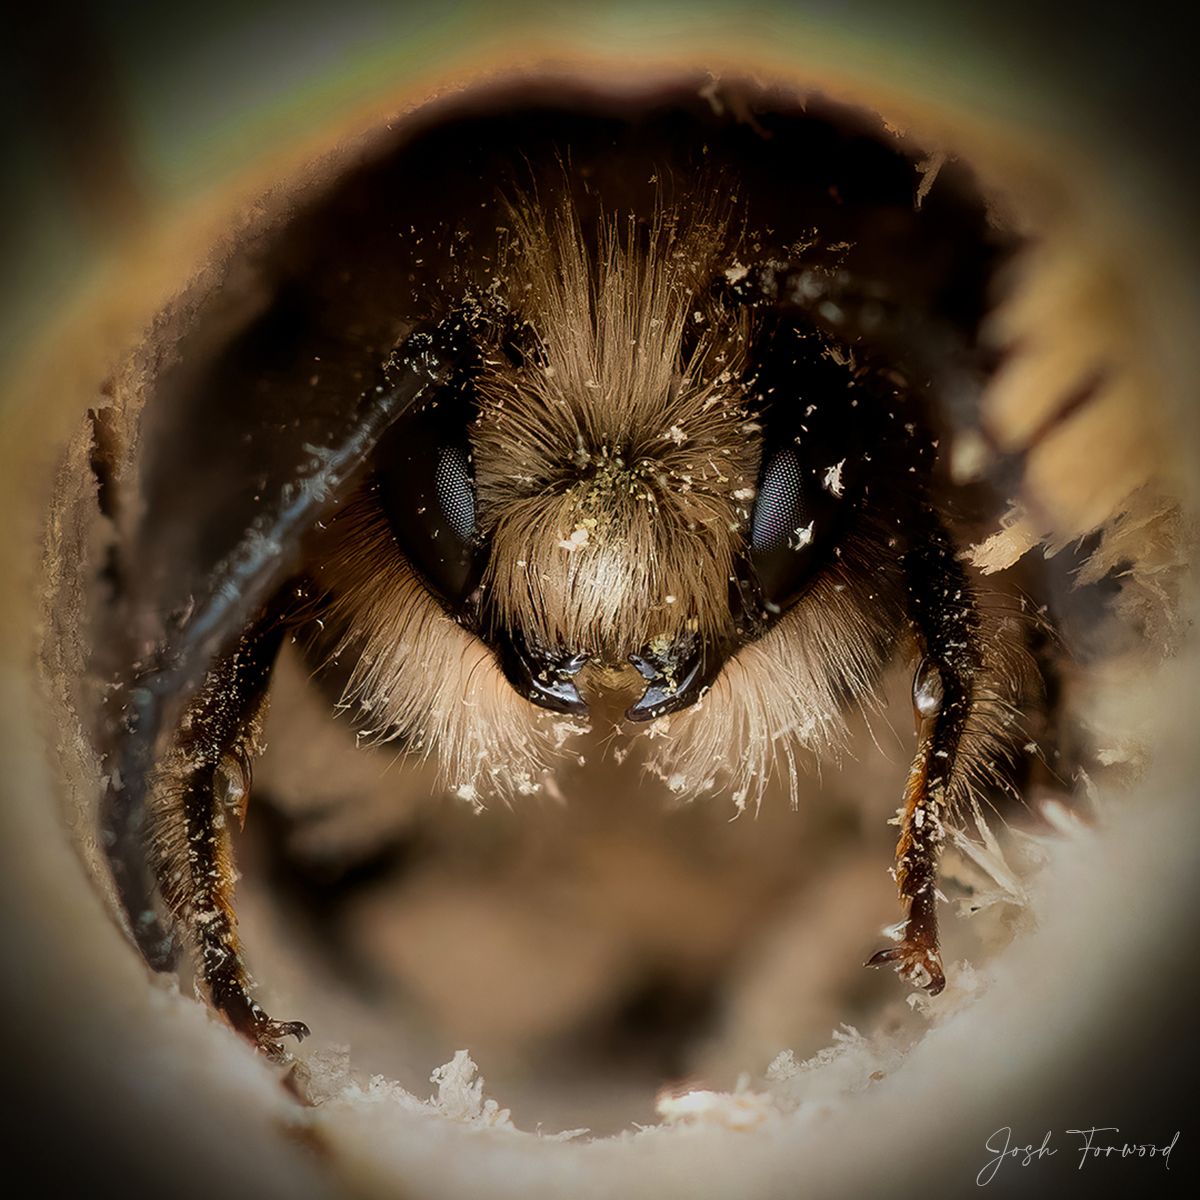 Salvem as abelhinhas: série de fotos revela suas diferentes personalidades